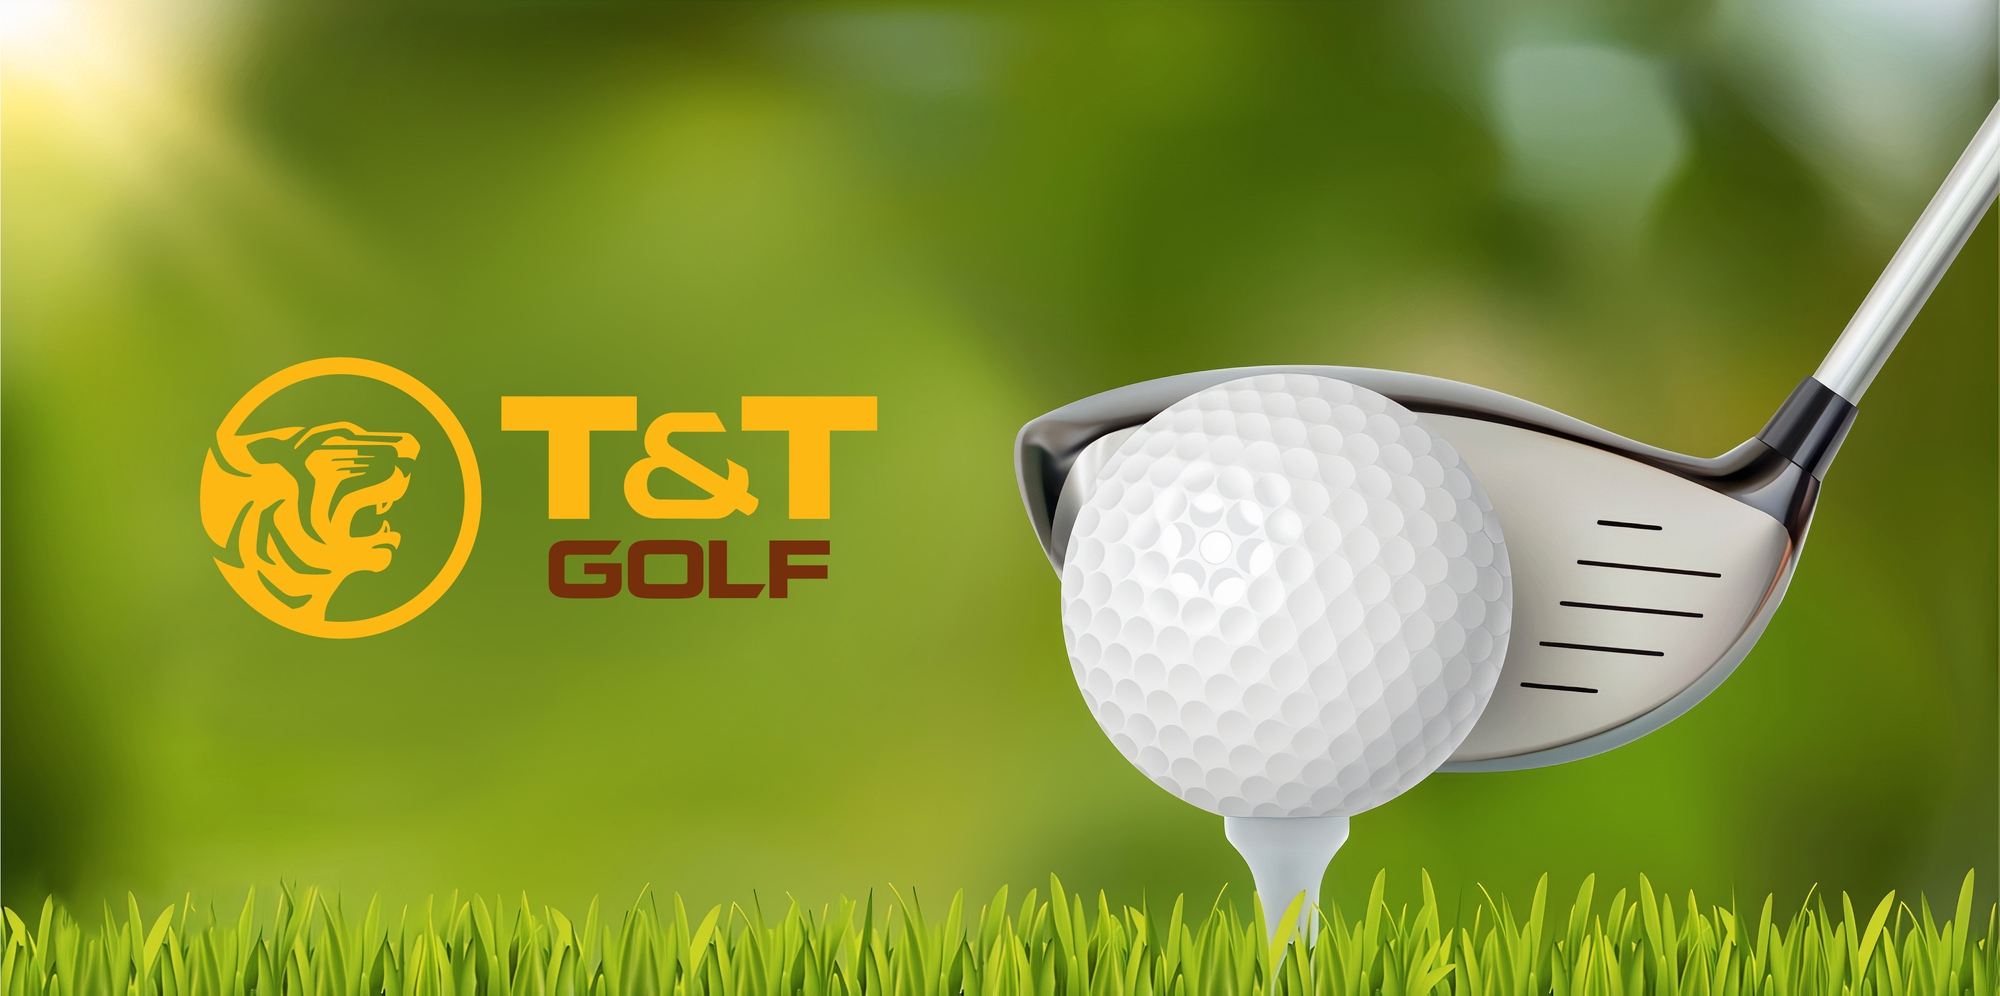 T&T Group ra mắt thương hiệu T&T Golf với dự án đầu tiên tại Phú Thọ - Ảnh 1.